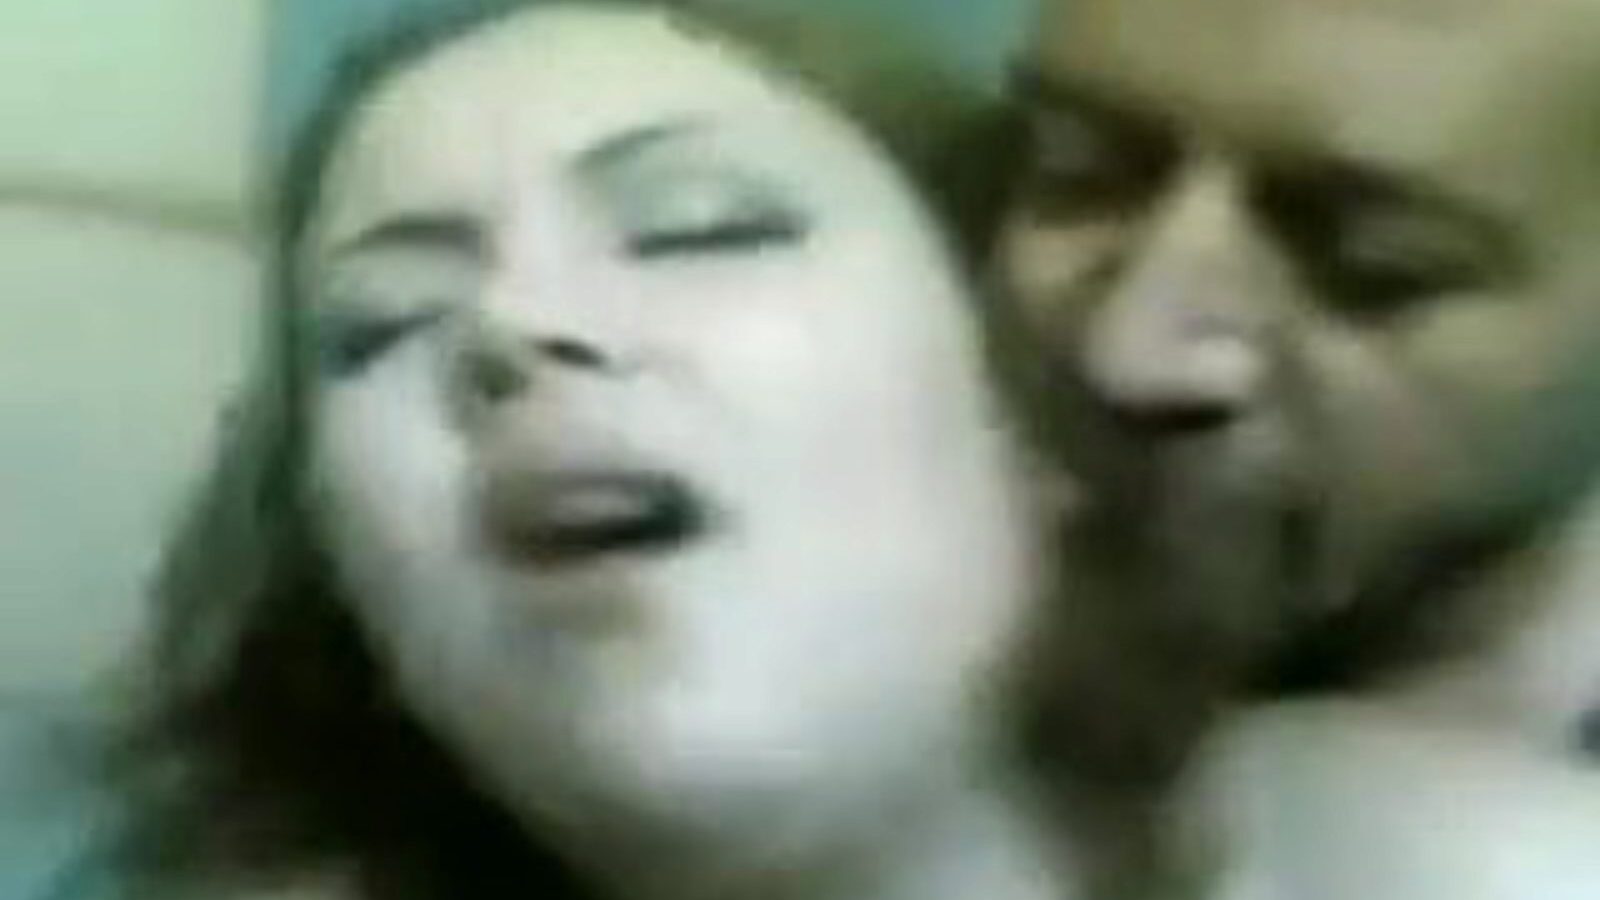 madame lily: gratis negenenzestig porno video 07 - xhamster bekijk madame lily tube vrijen clip gratis-voor-iedereen op xhamster, met de superieure schare Egyptische arabieren, 69 & big ass porno video-afleveringen